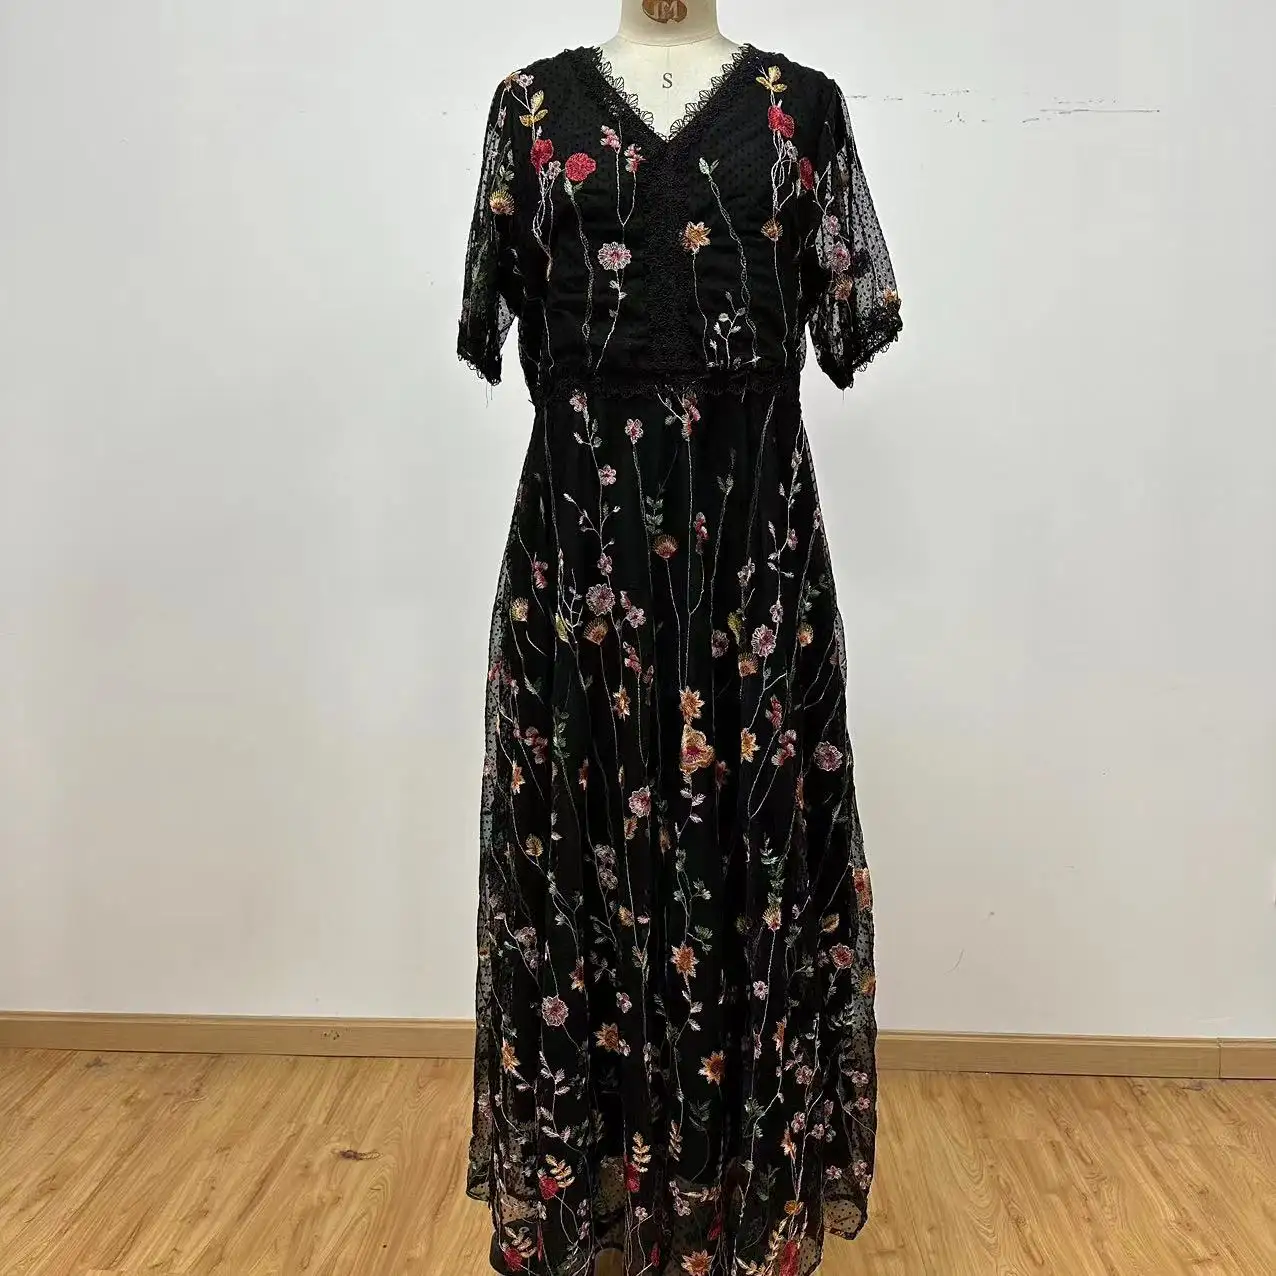 Жаккардовое платье в стиле ретро, с длинным рукавом